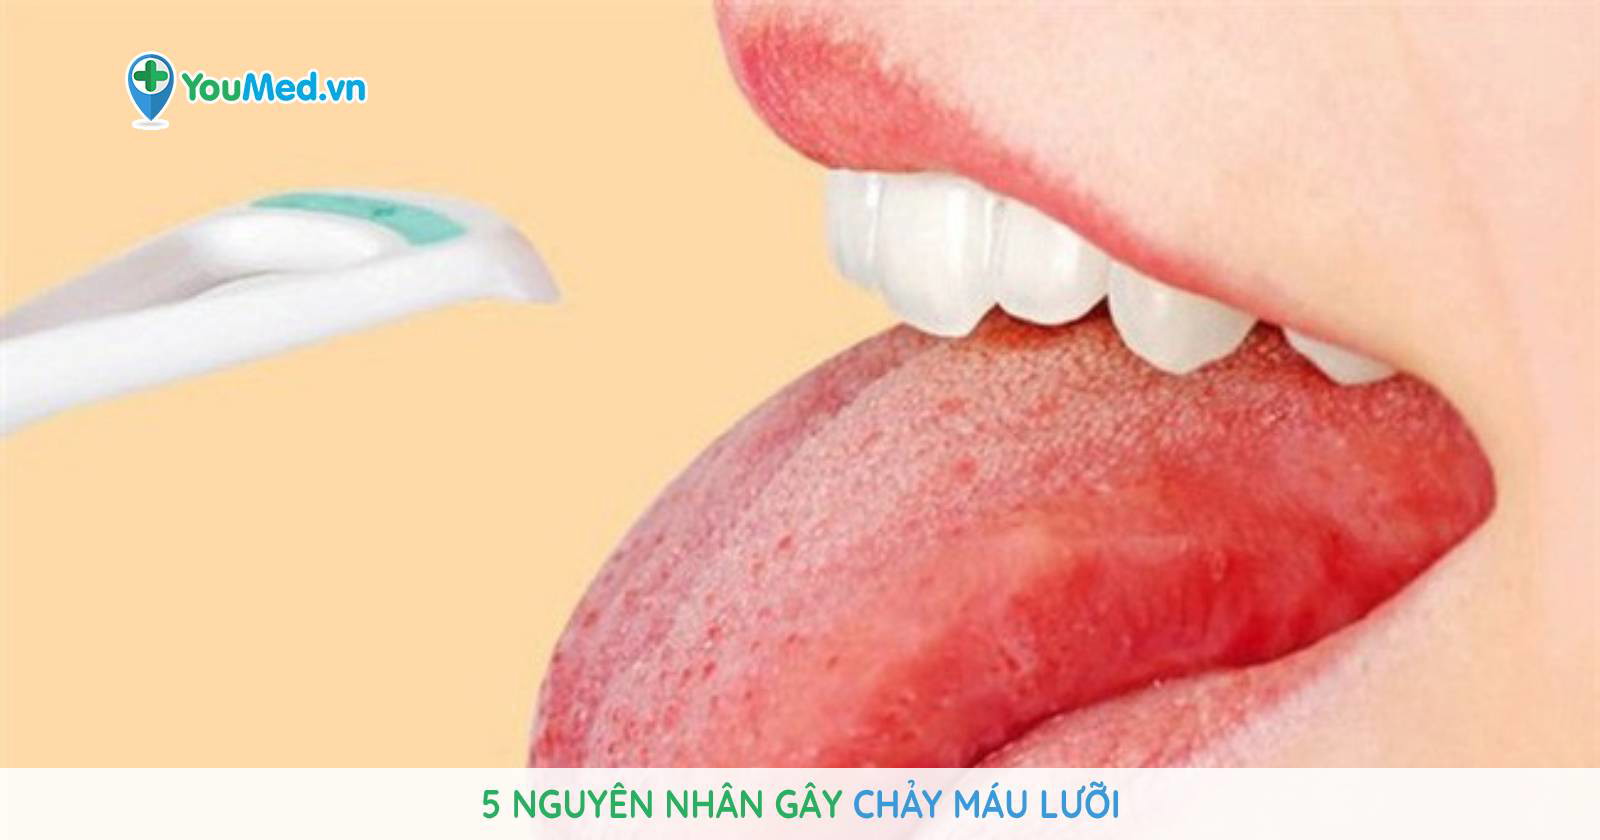 Nguyên nhân và cách xử lý lưỡi chảy máu bạn nên biết